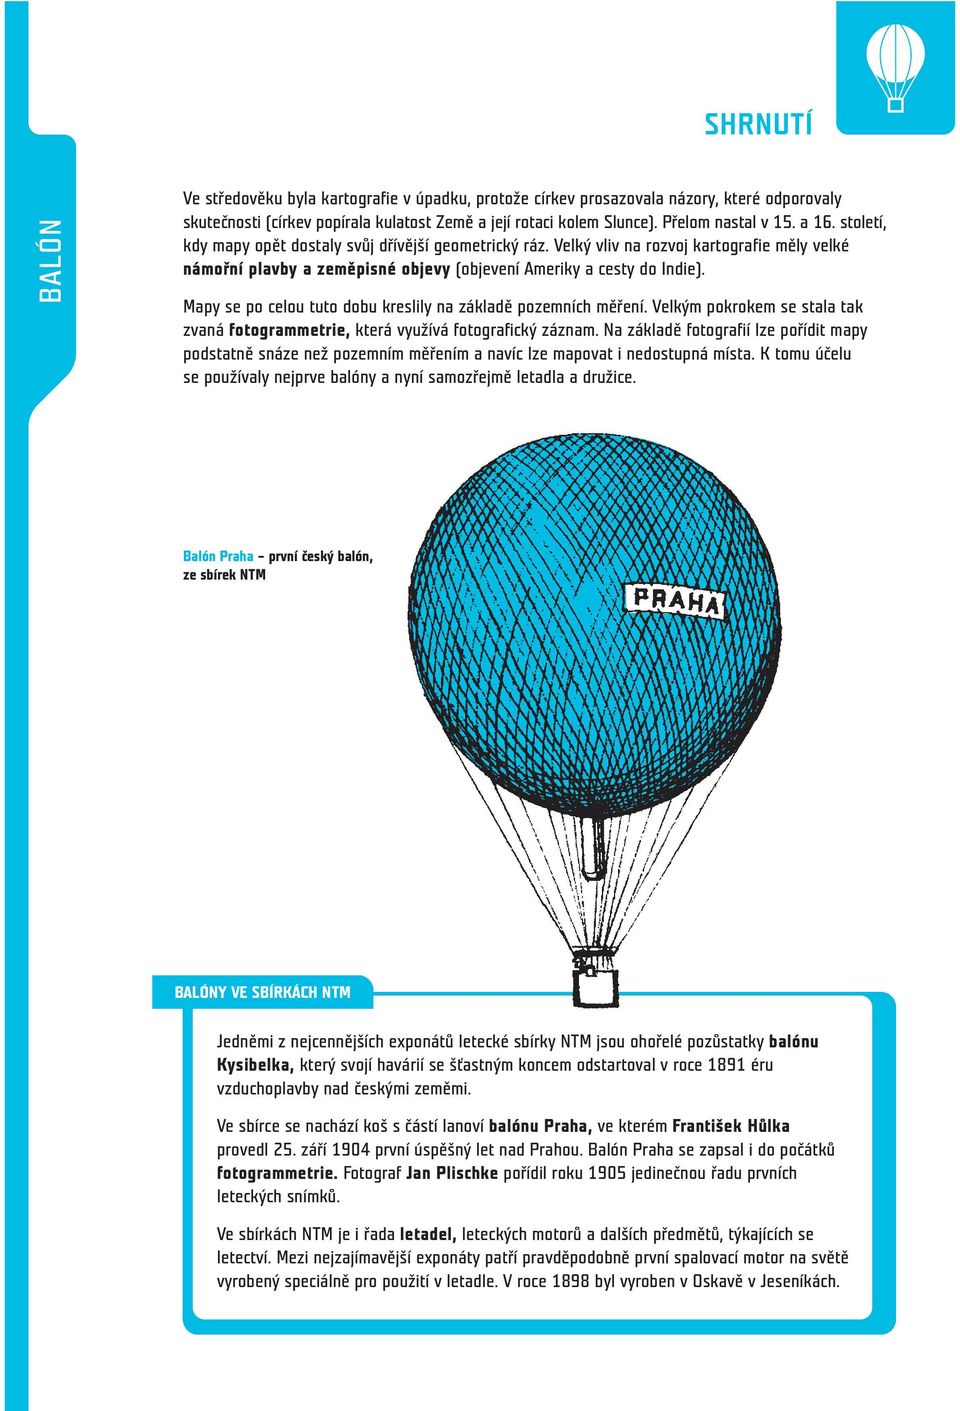 Balón BALÓN. Vraťme se teď k začátkům létání v Evropě. Charliera, Francie,  Montgolfiéra, Francie, Vzducholoď, Francie, PDF Stažení zdarma